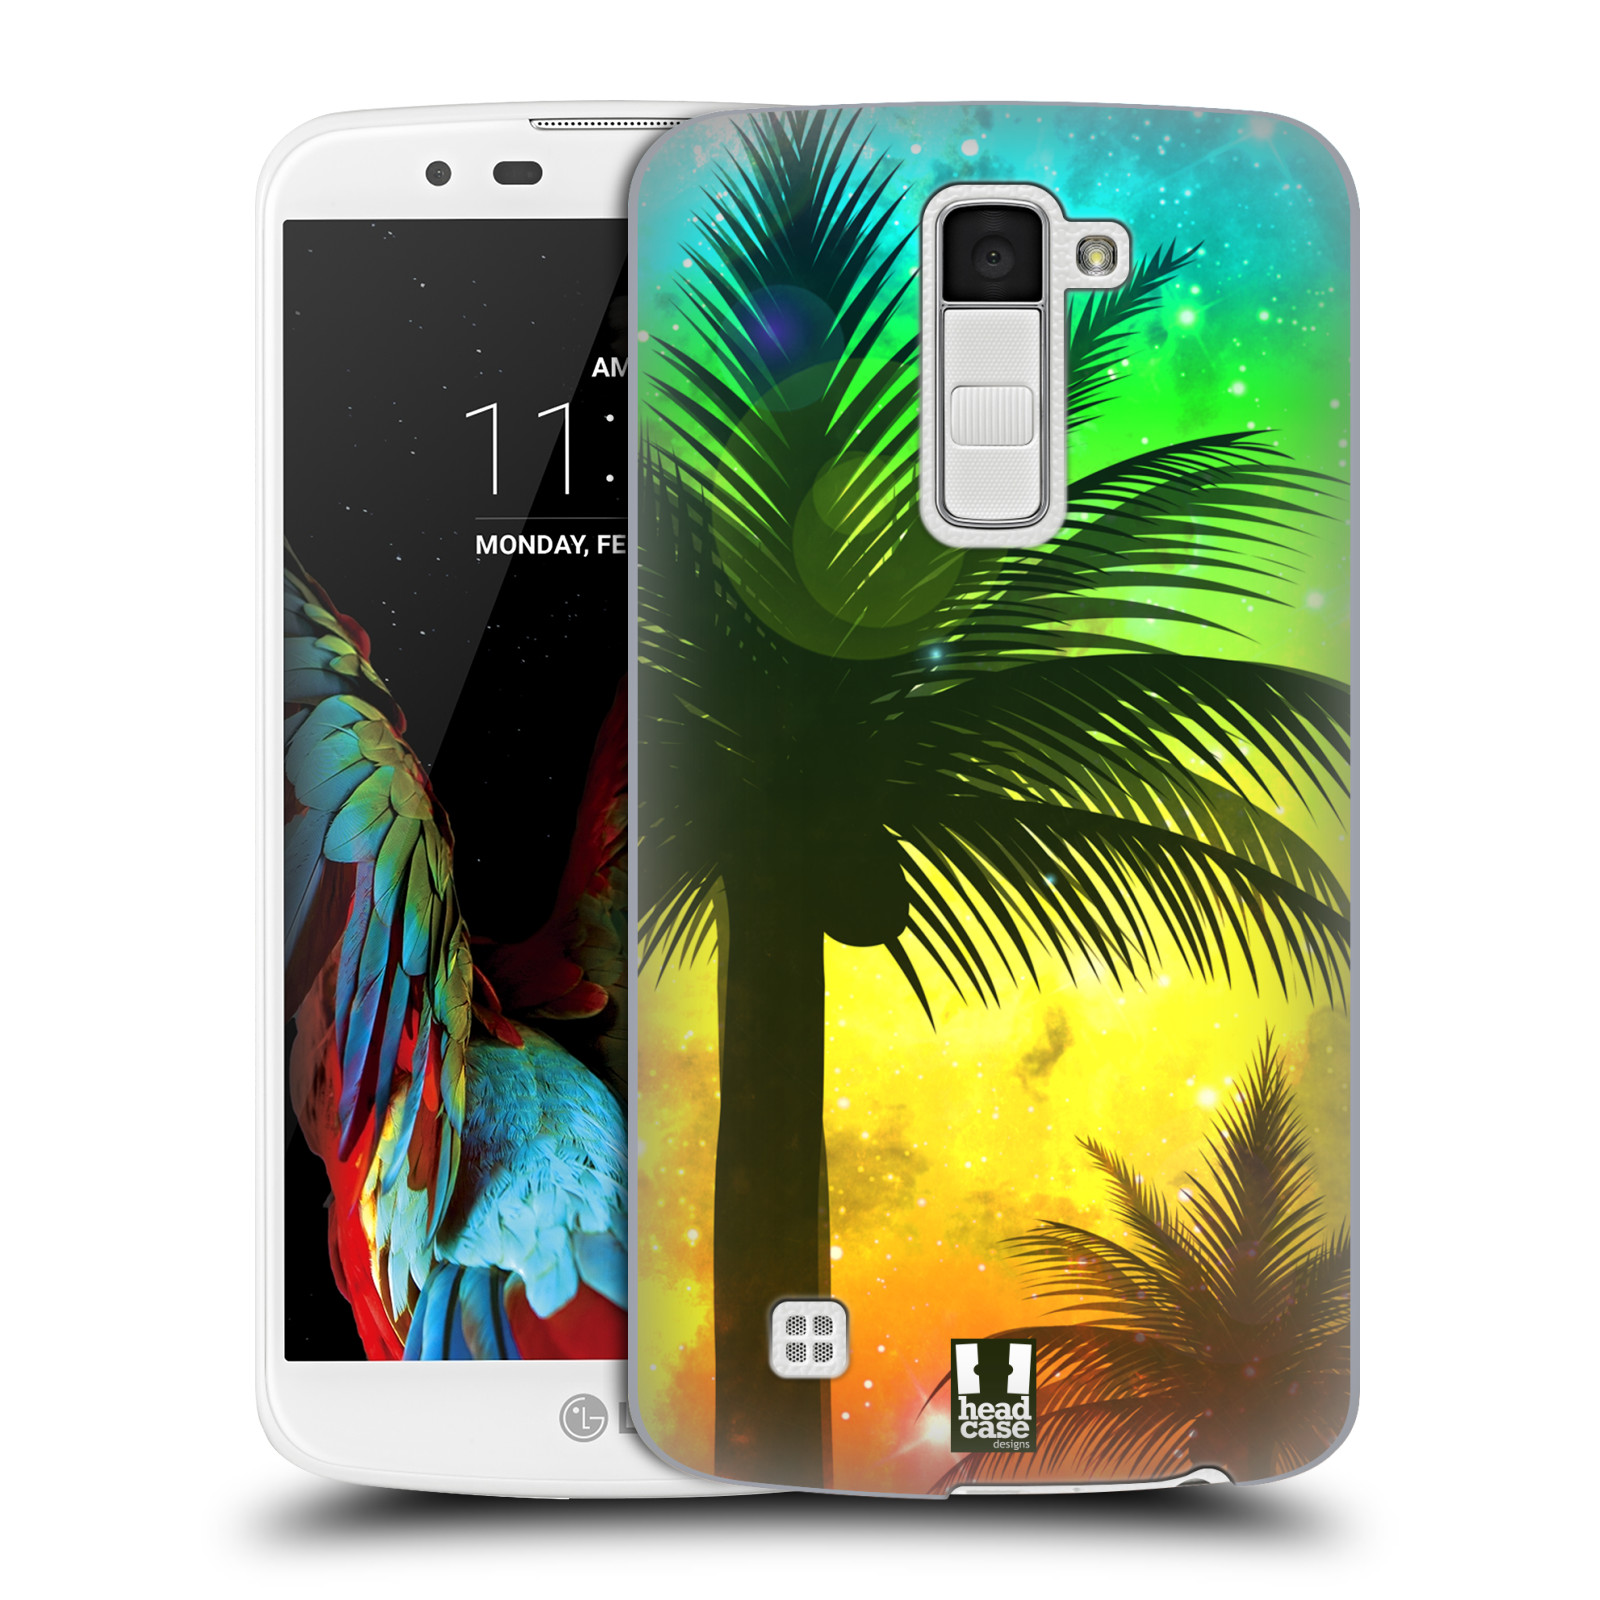 HEAD CASE plastový obal na mobil LG K10 vzor Kreslený motiv silueta moře a palmy ZELENÁ A ORANŽOVÁ